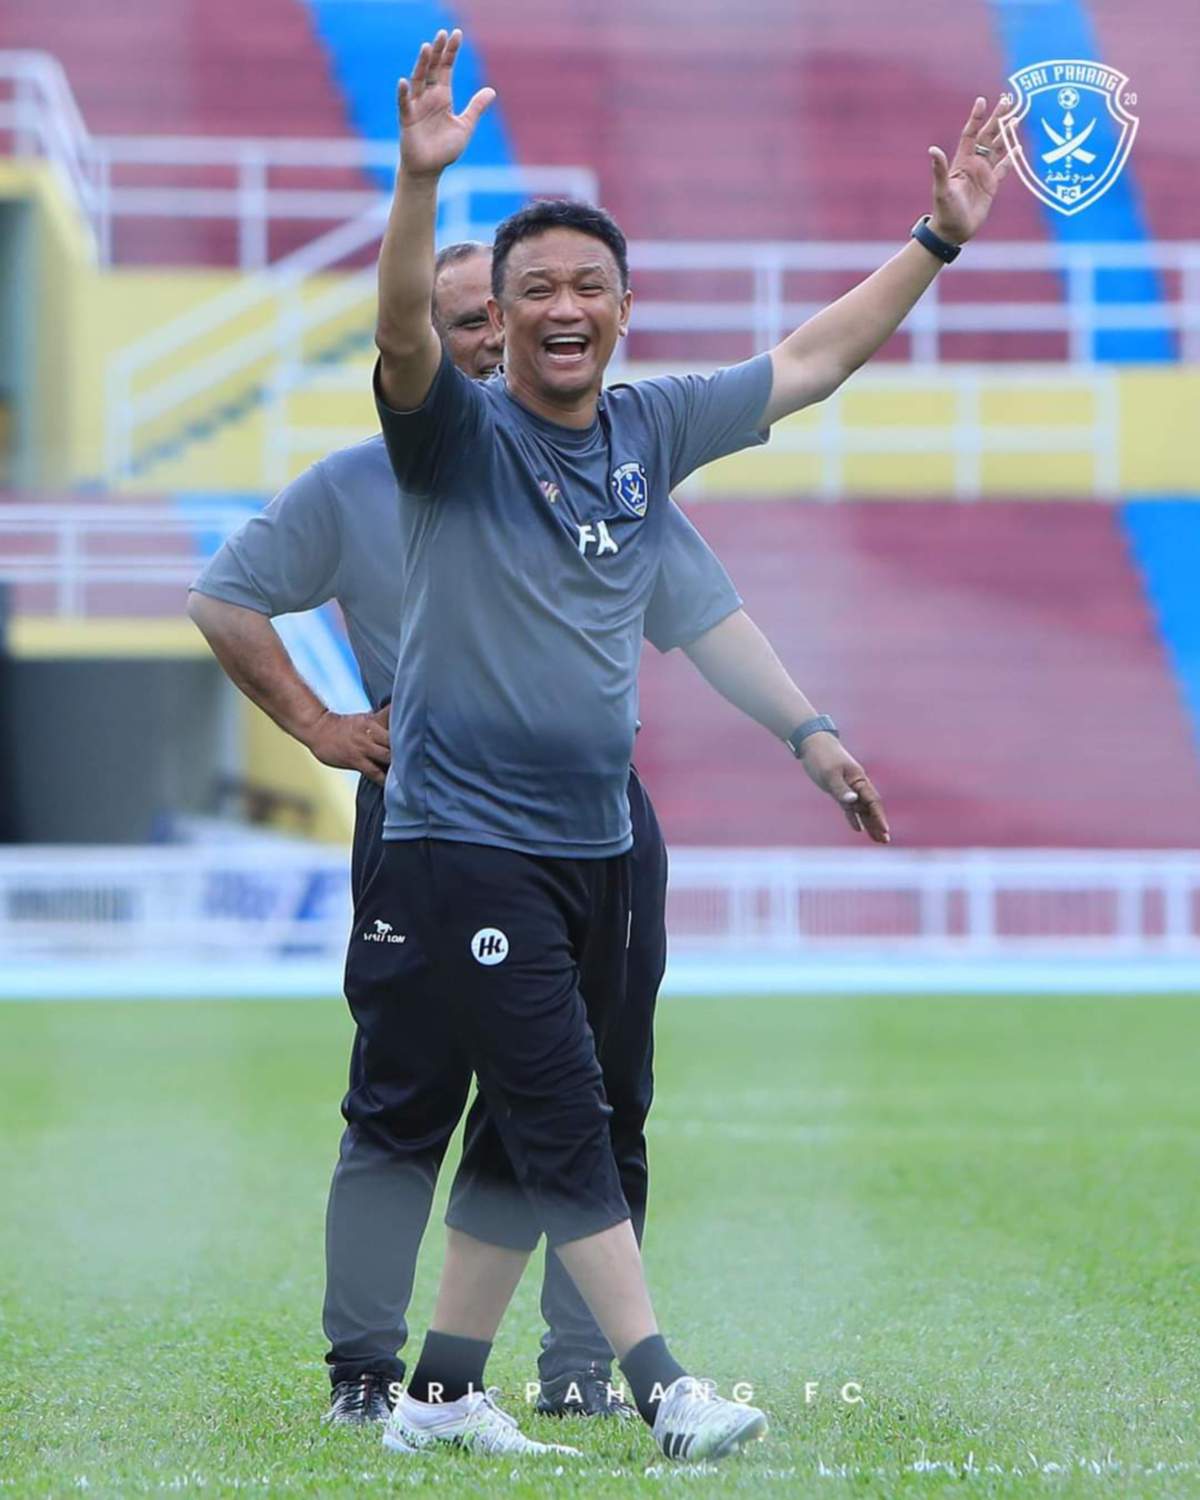 FANDI Ahmad dikatakan bakal dilantik Ketua Jurulatih Sri Pahang FC musim depan. FOTO Sri Pahang FC